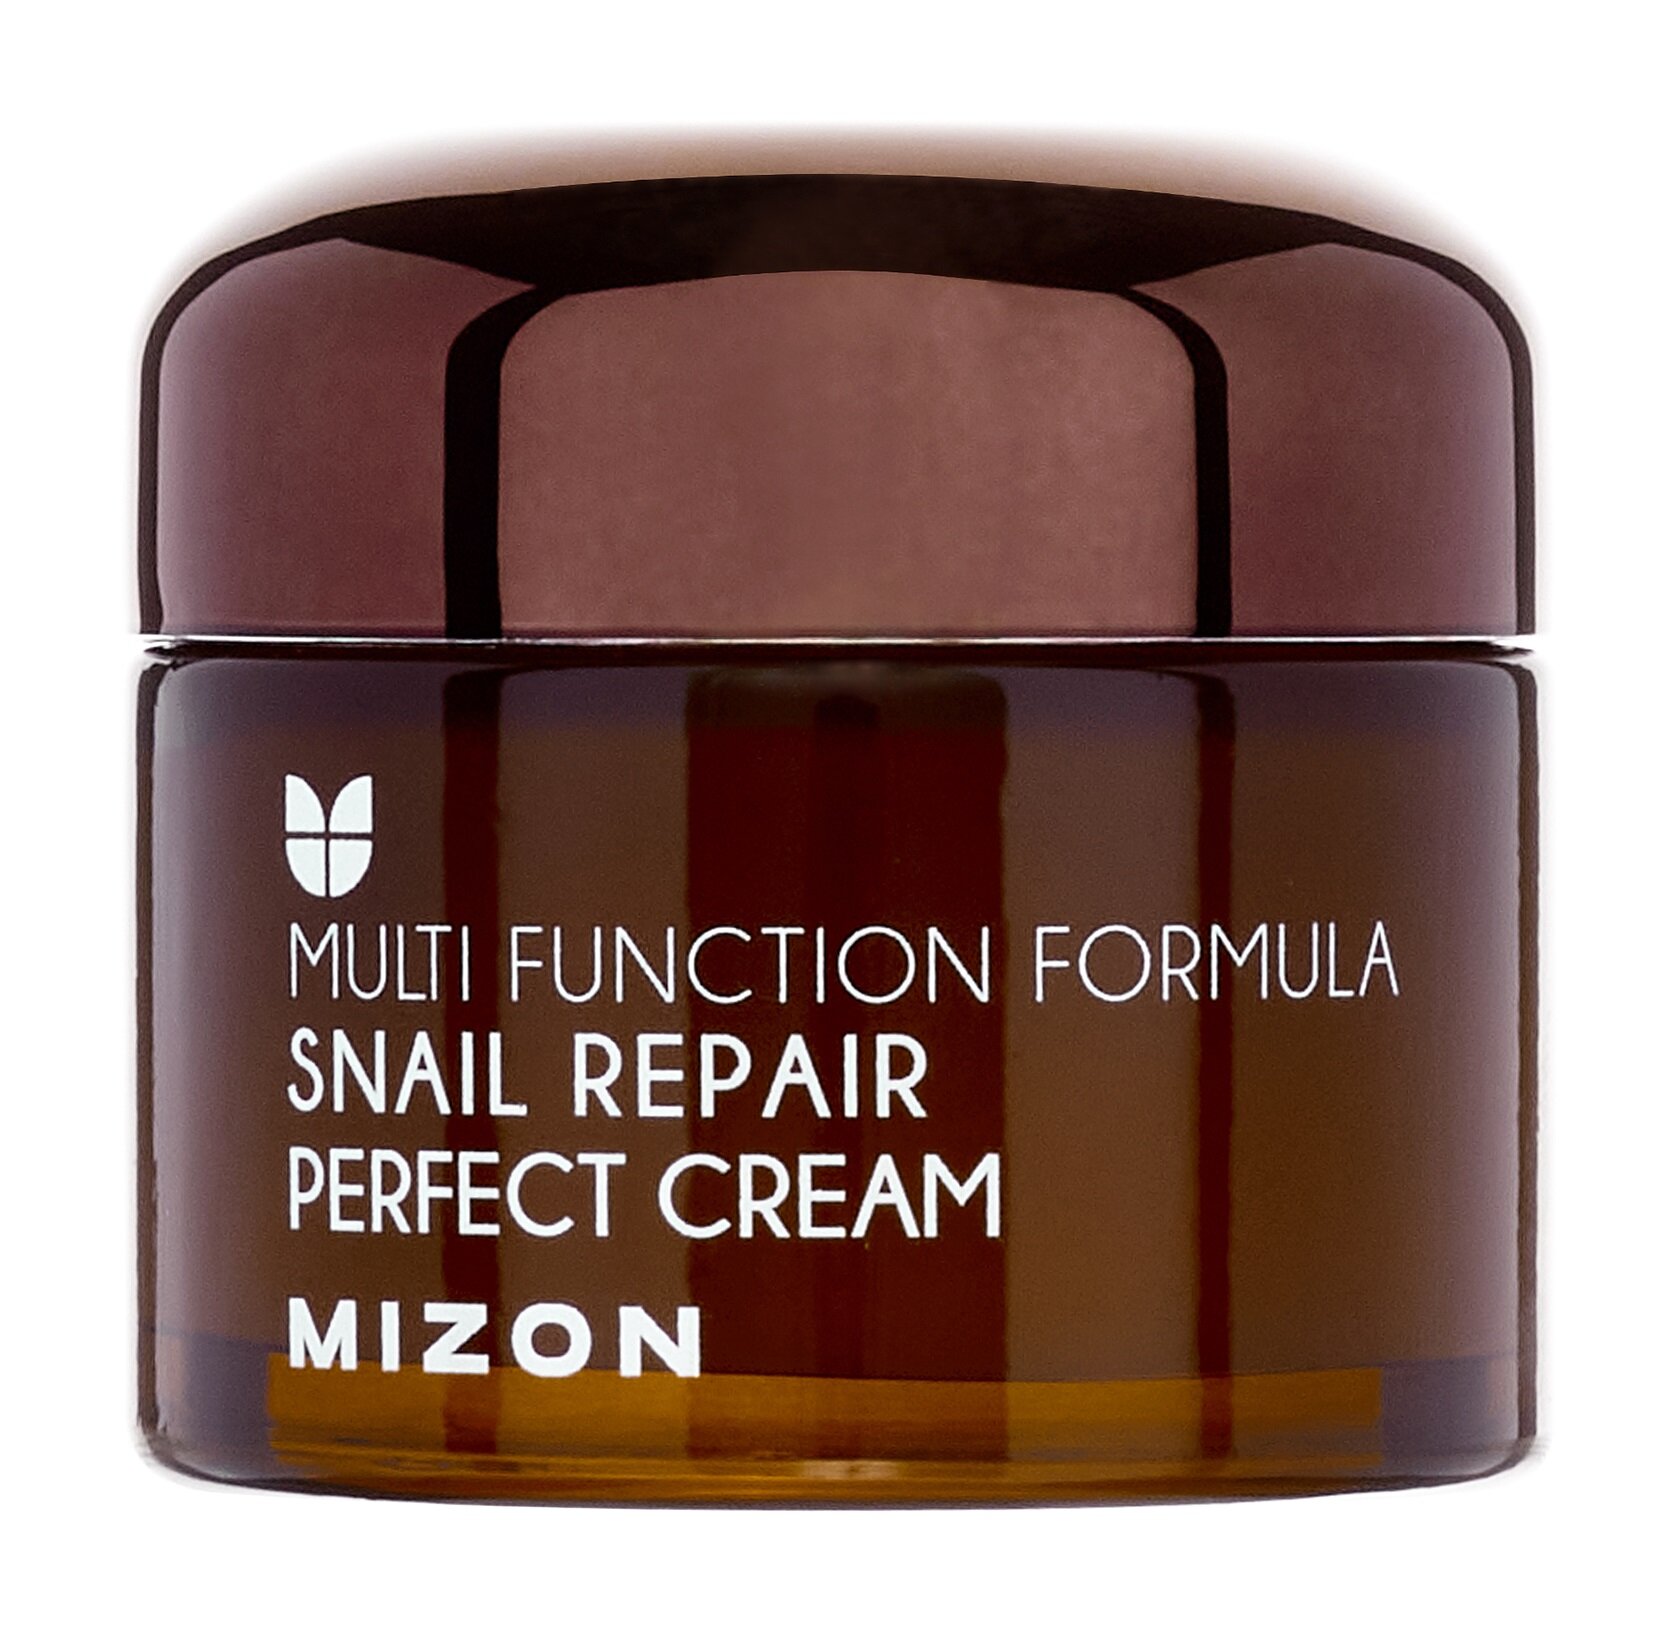 Питательный крем для лица с муцином улитки Mizon Snail Repair Perfect Cream /50 мл/гр.